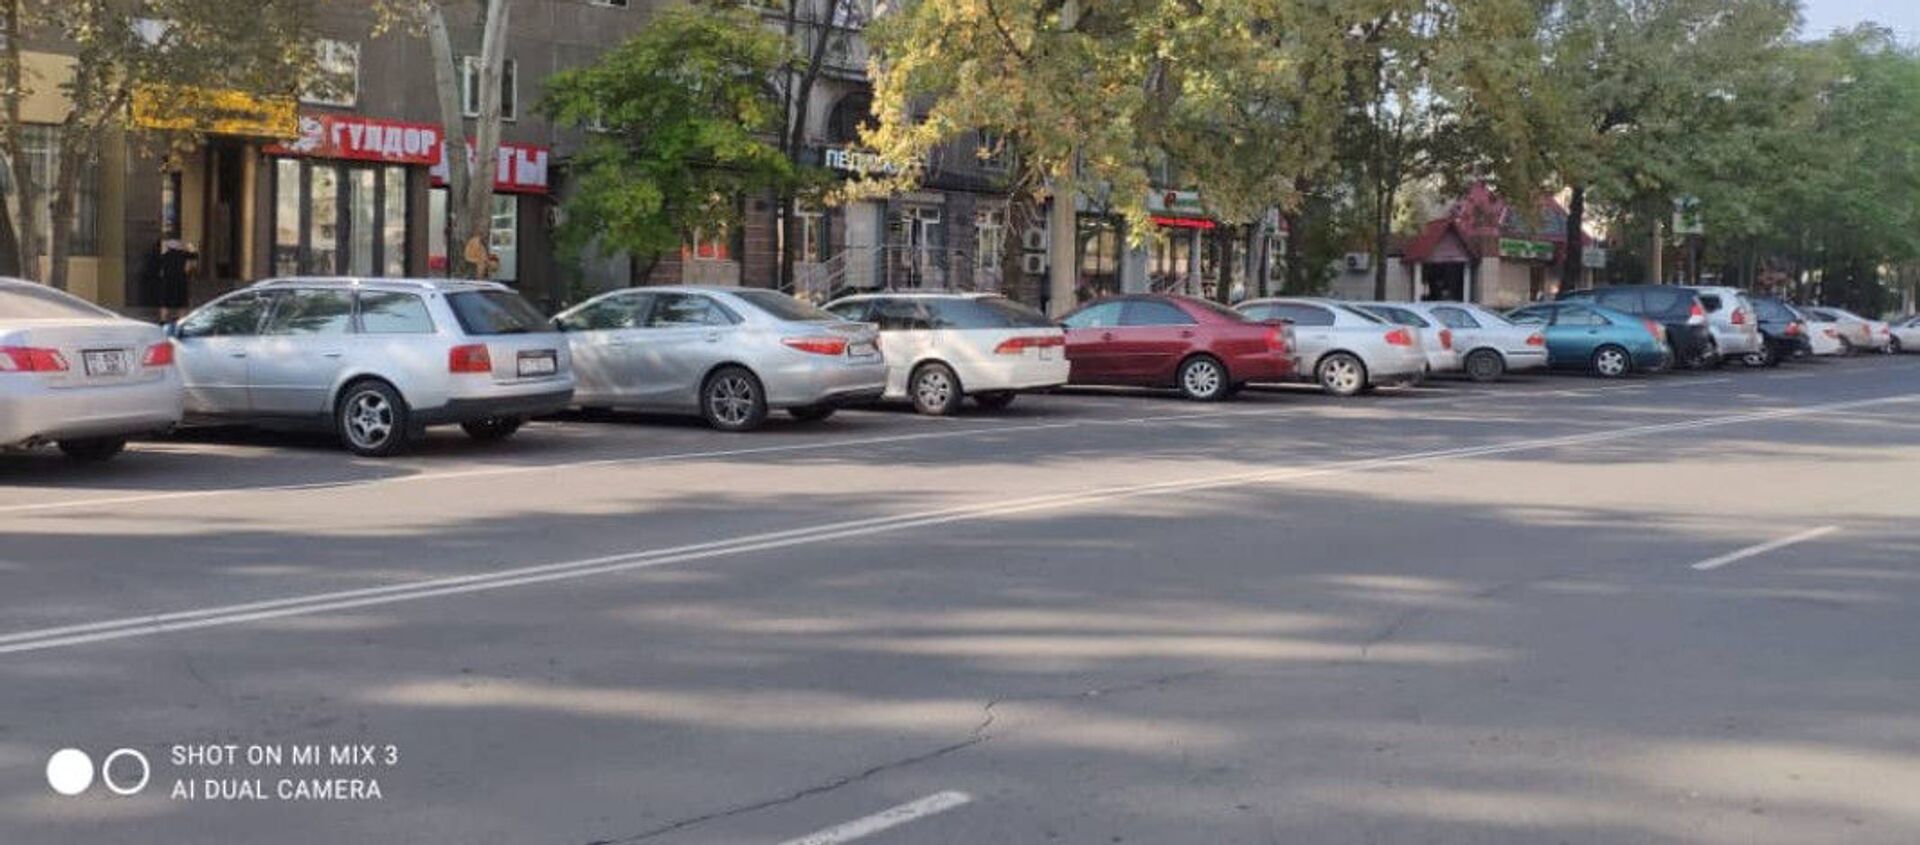 Автомобили припаркованные в новой муниципальной парковке в Бишкеке - Sputnik Кыргызстан, 1920, 14.10.2021